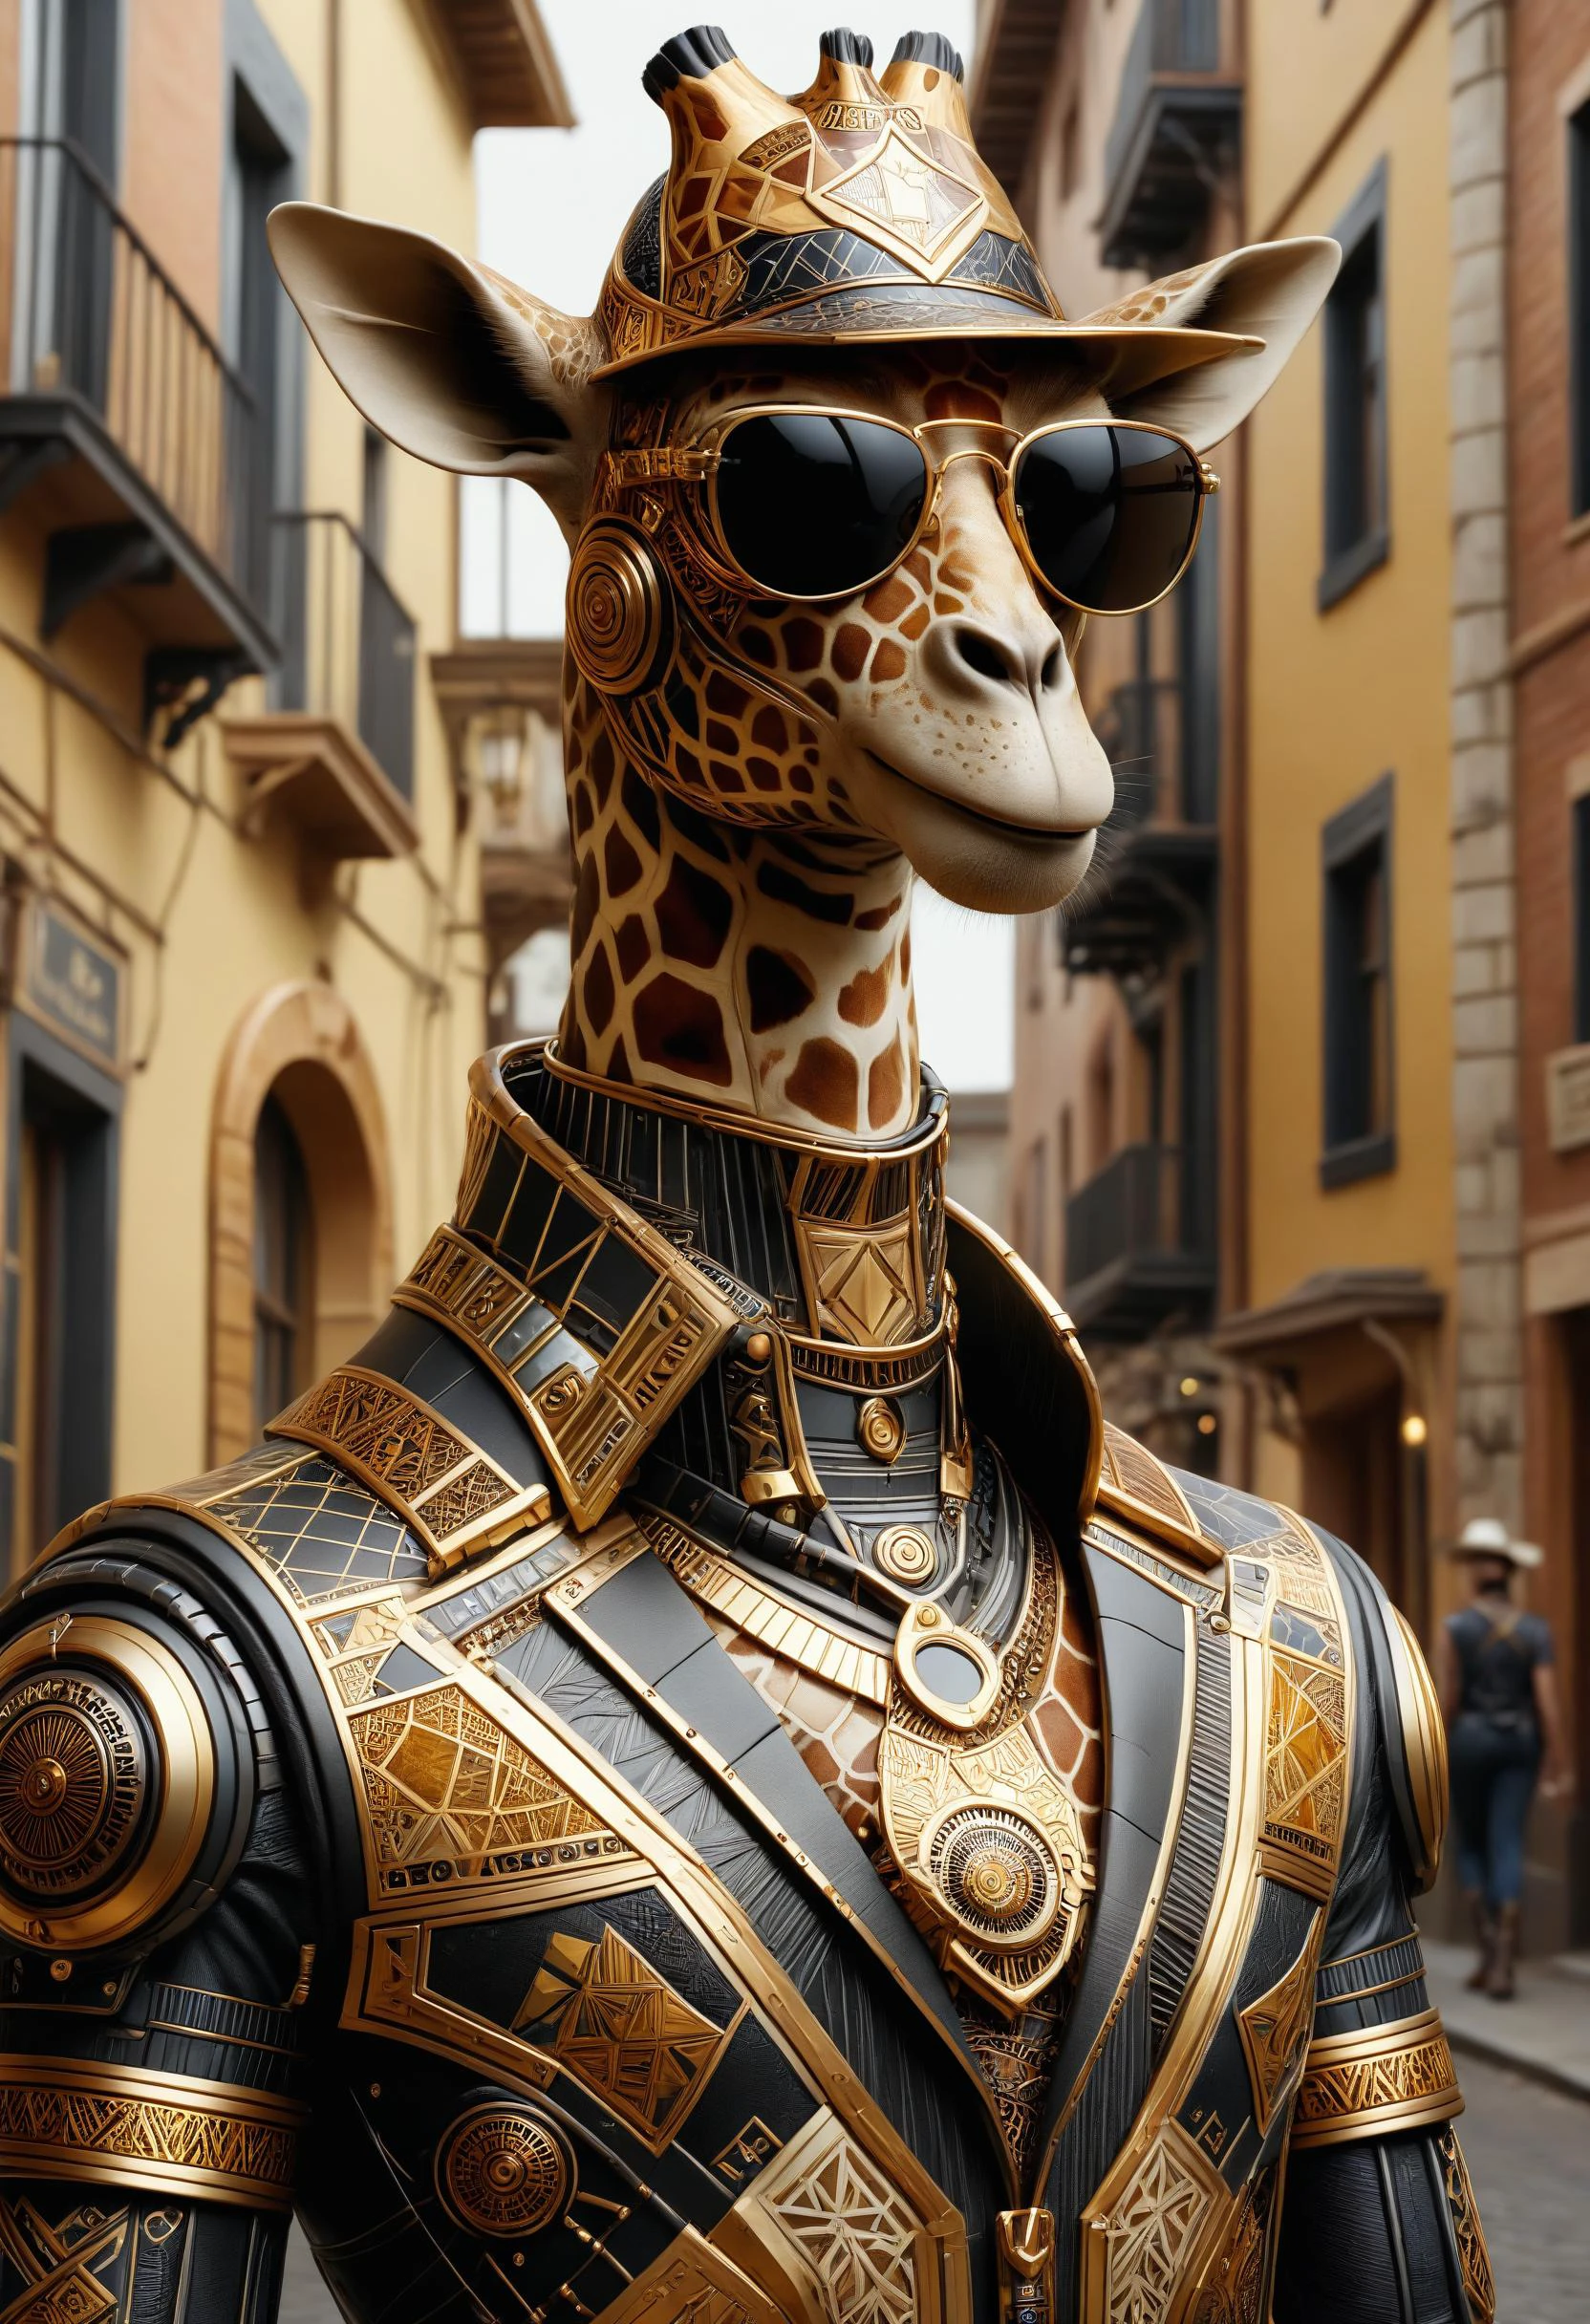 Anthropologische Giraffe, trägt einen Cyber-Anzug, Cowboyhut und Sonnenbrille in einer Altstadt dvr-frft